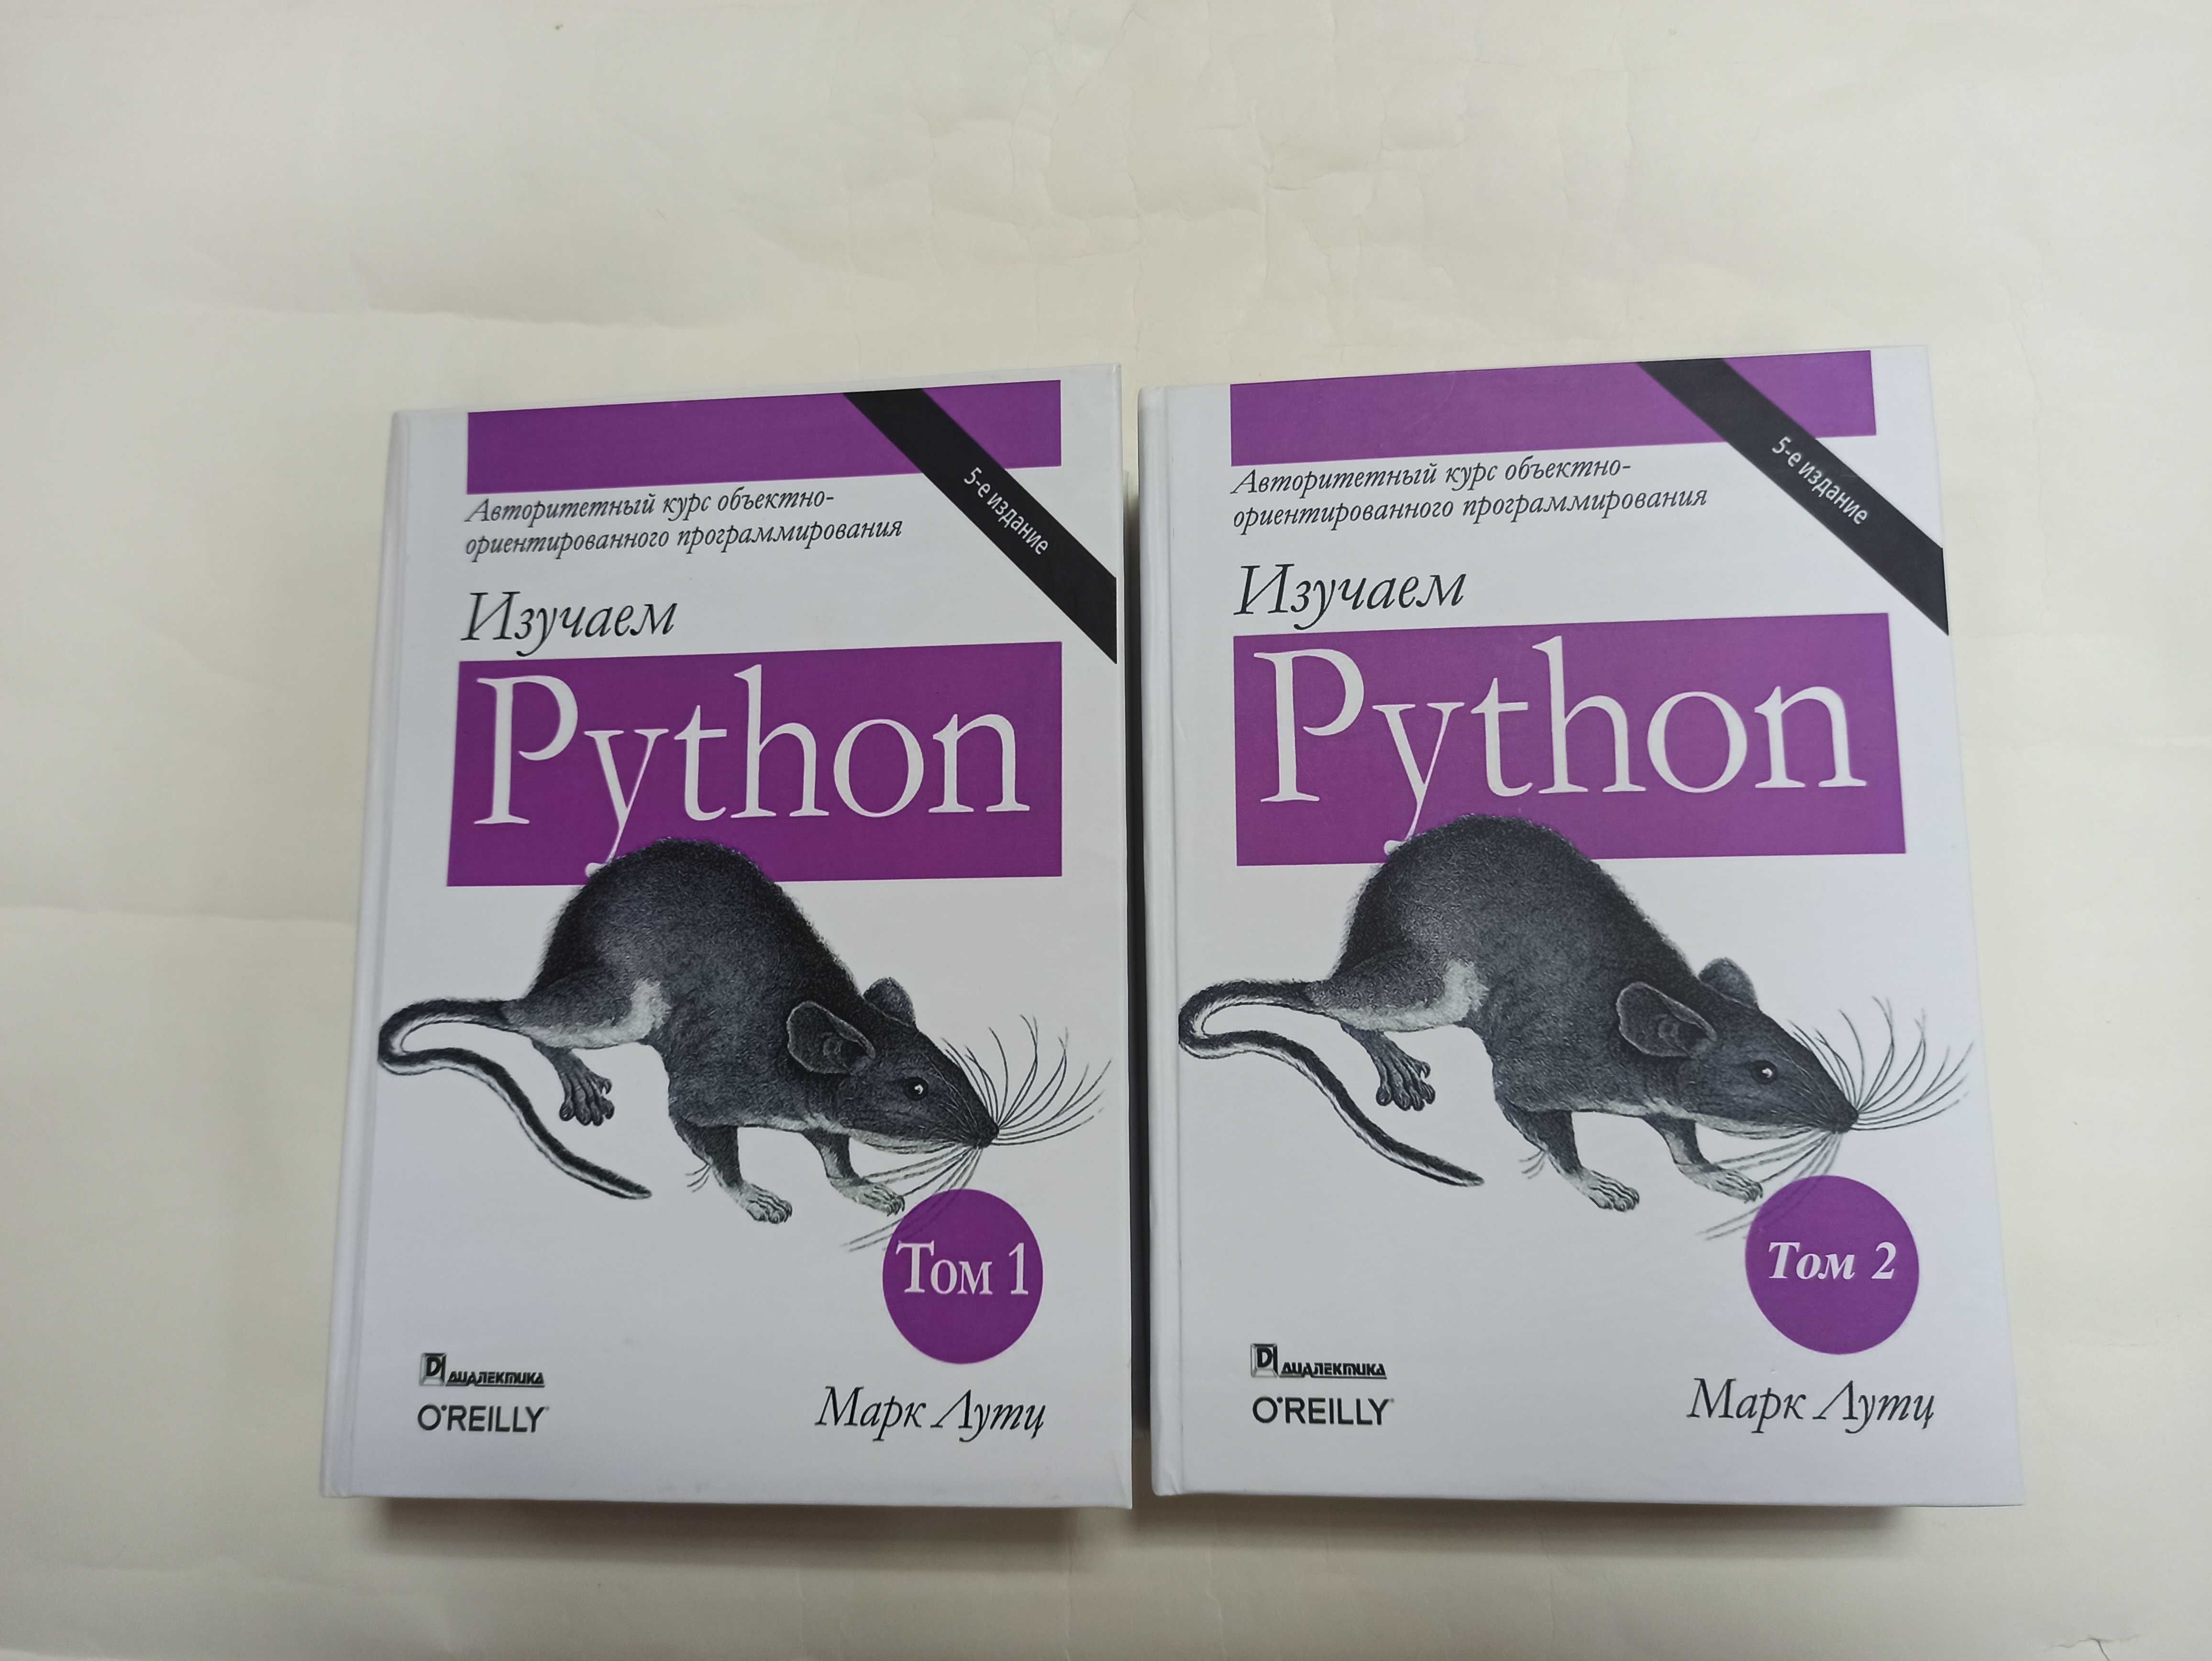 Изучаем Python (питон) в 2 томах. 5 издание! М. Лутц (твердая обложка)